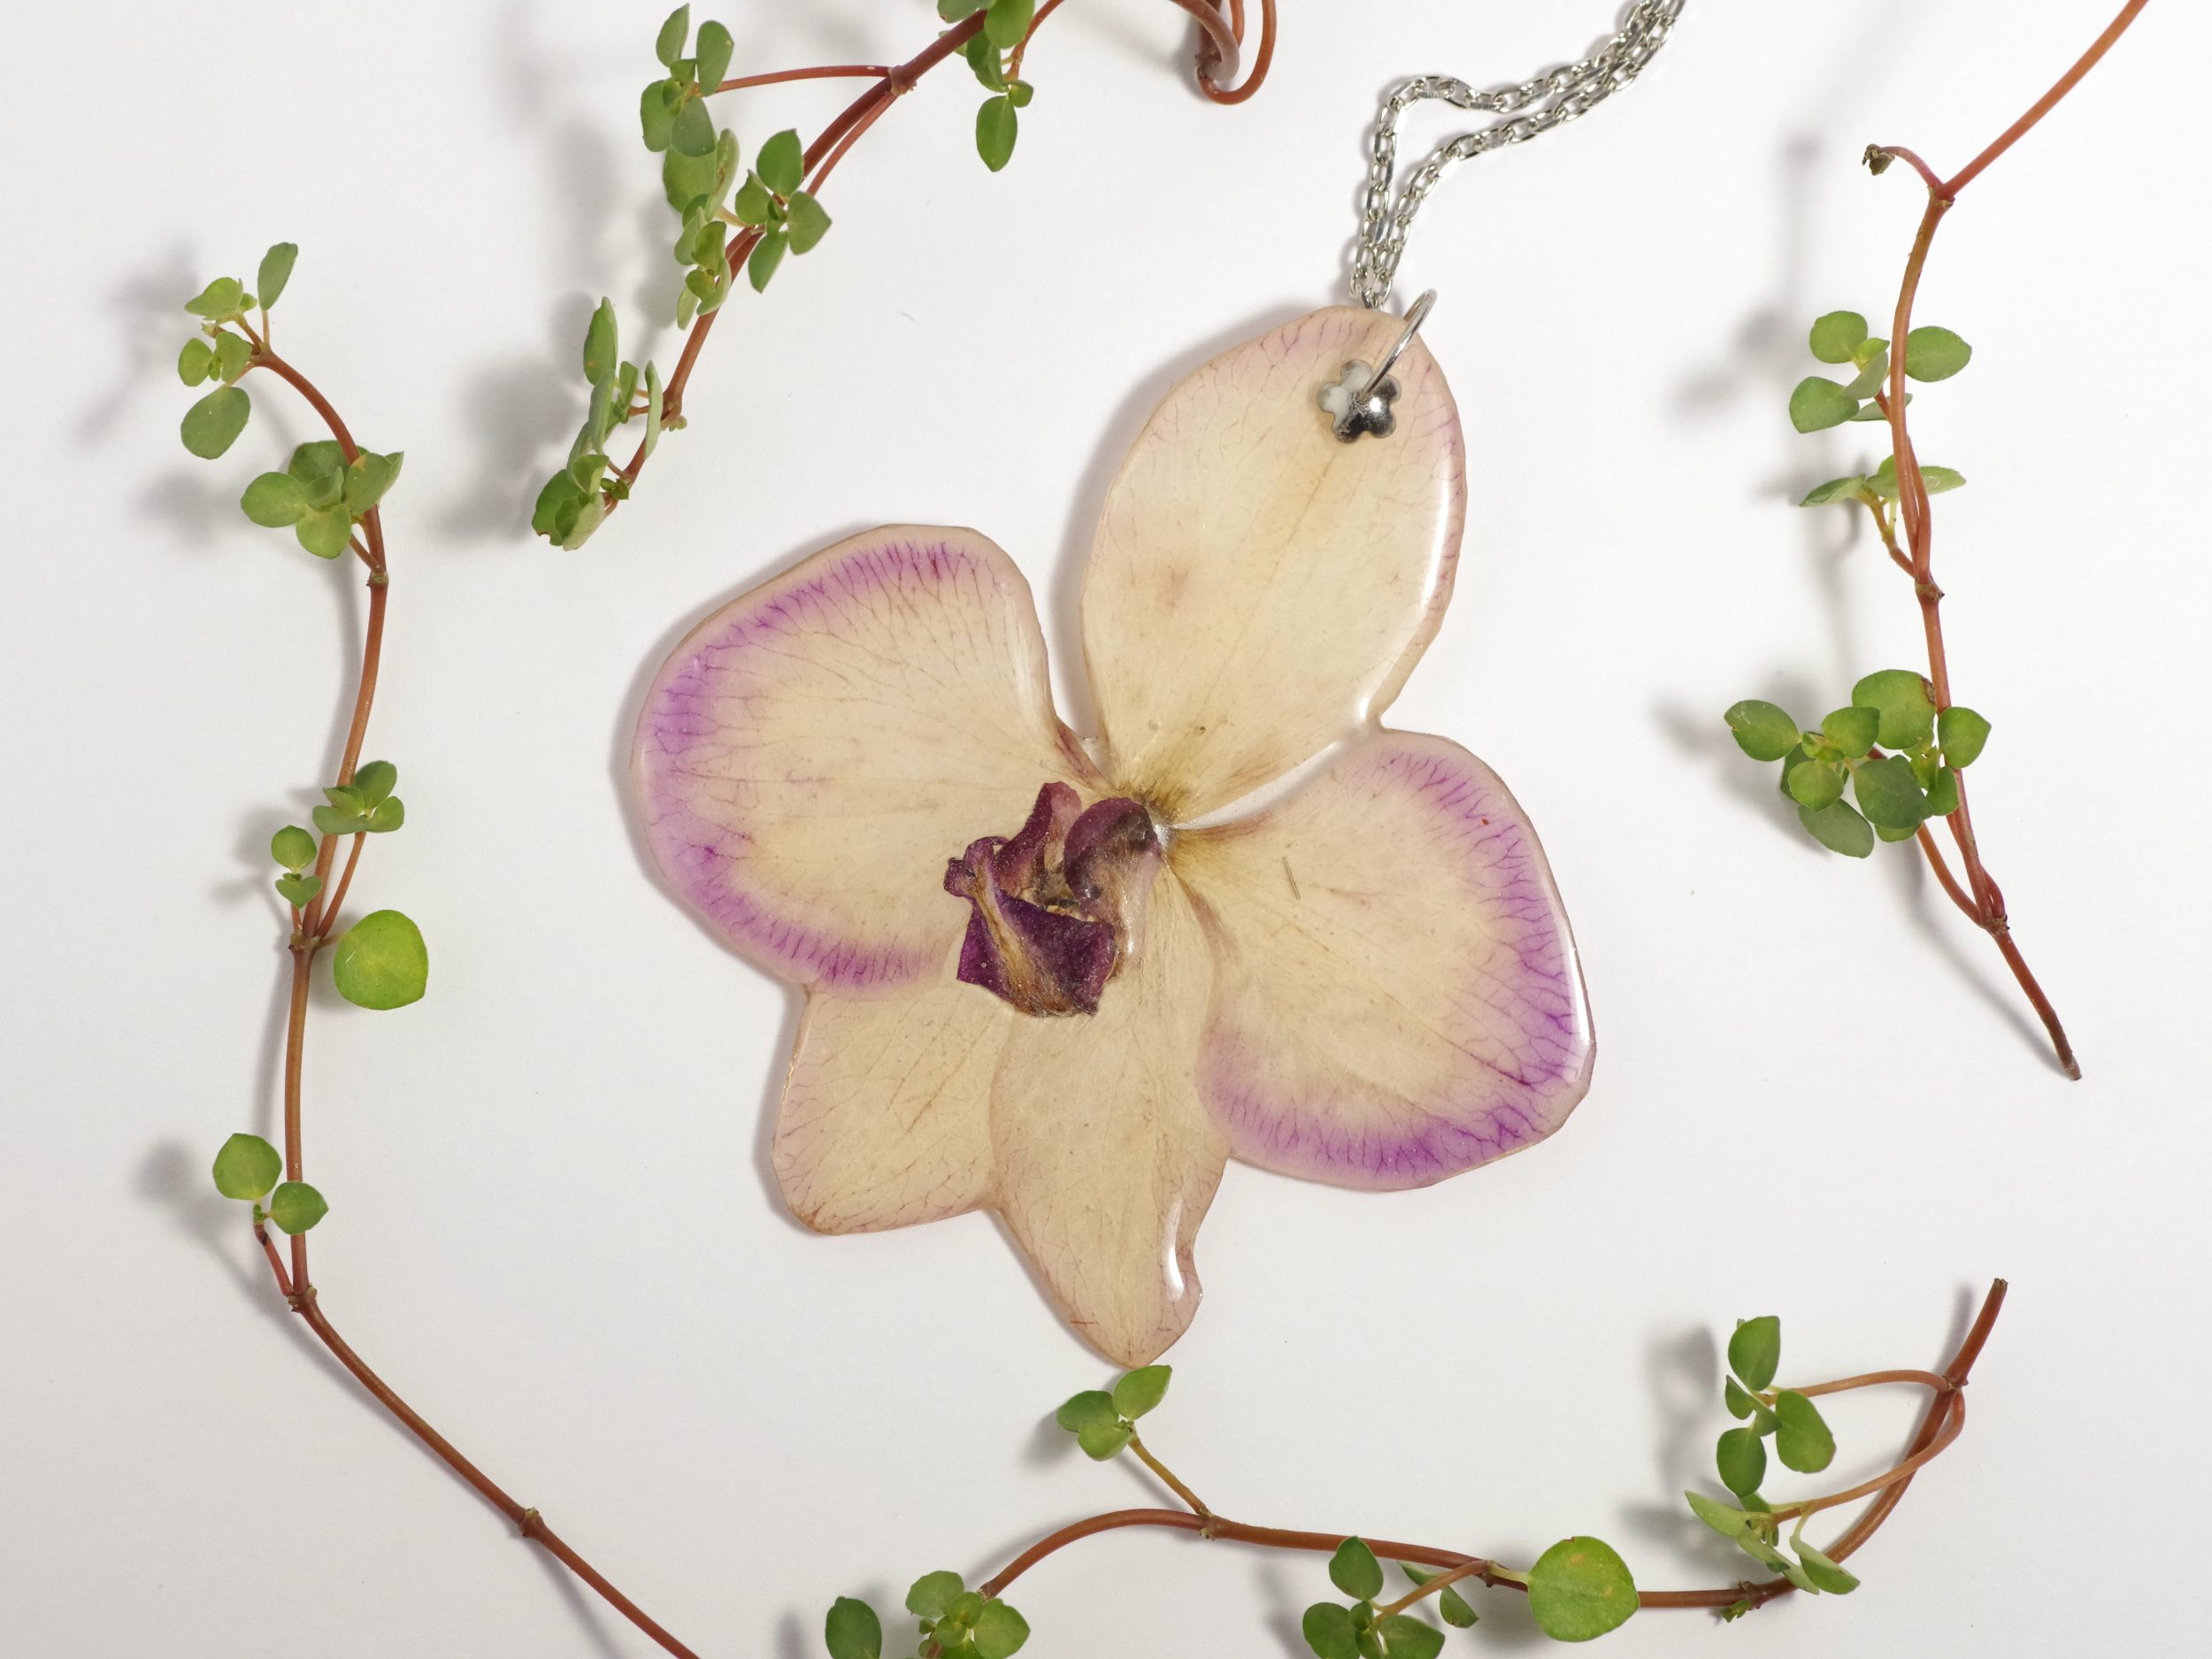 pendentif véritable orchidée violette, chaîne argentée en inox.